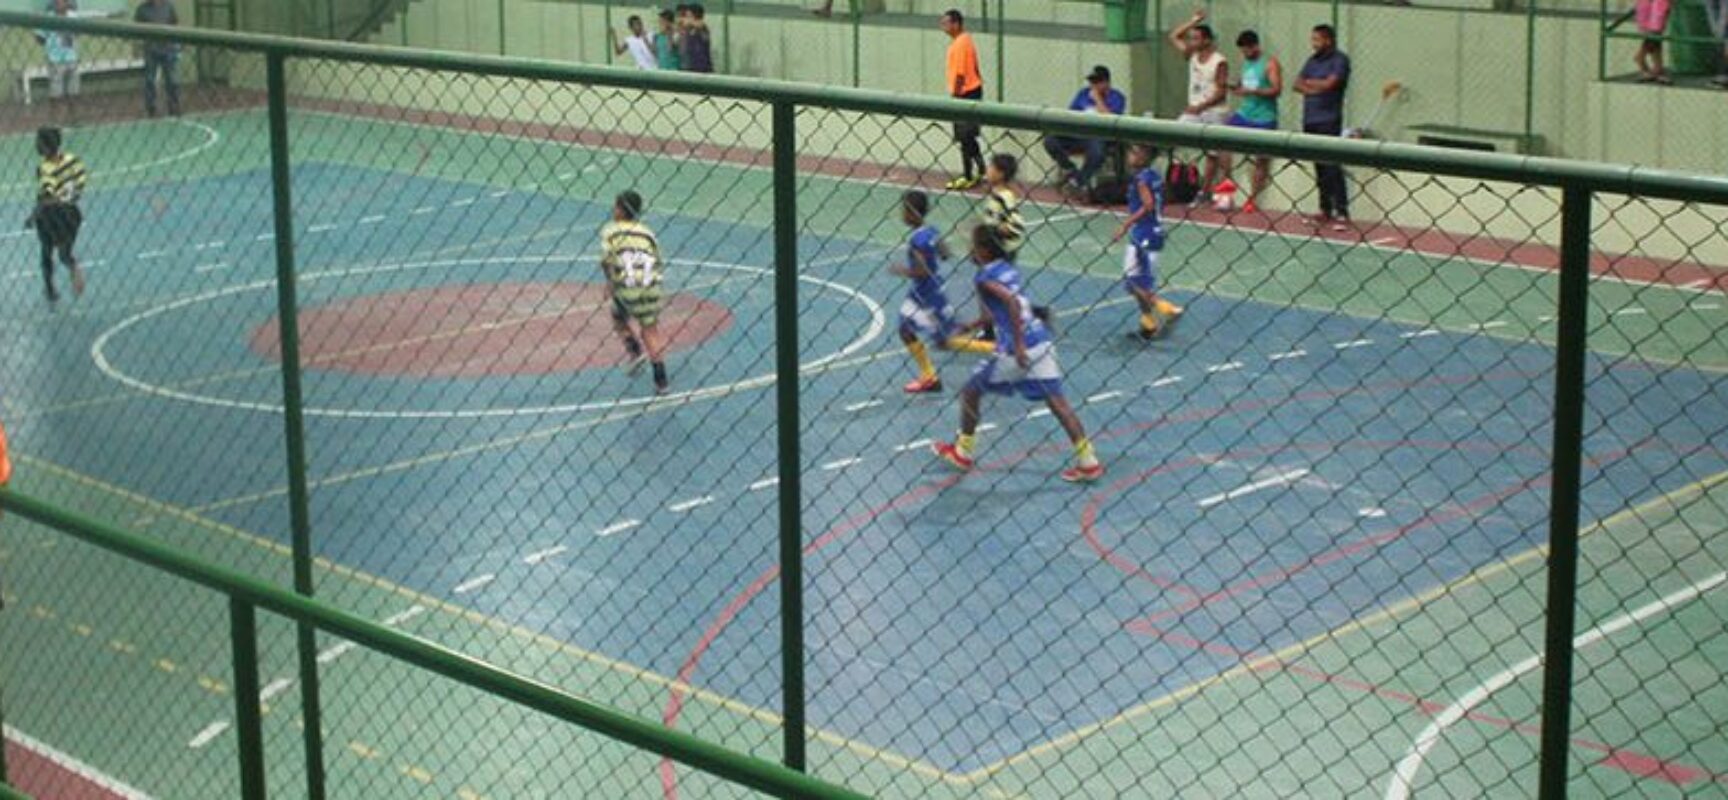 I Copa Socialização de Futsal no ginásio Nicécio Bráulio Dantas, em Ibicaraí, chega à fase semifinal